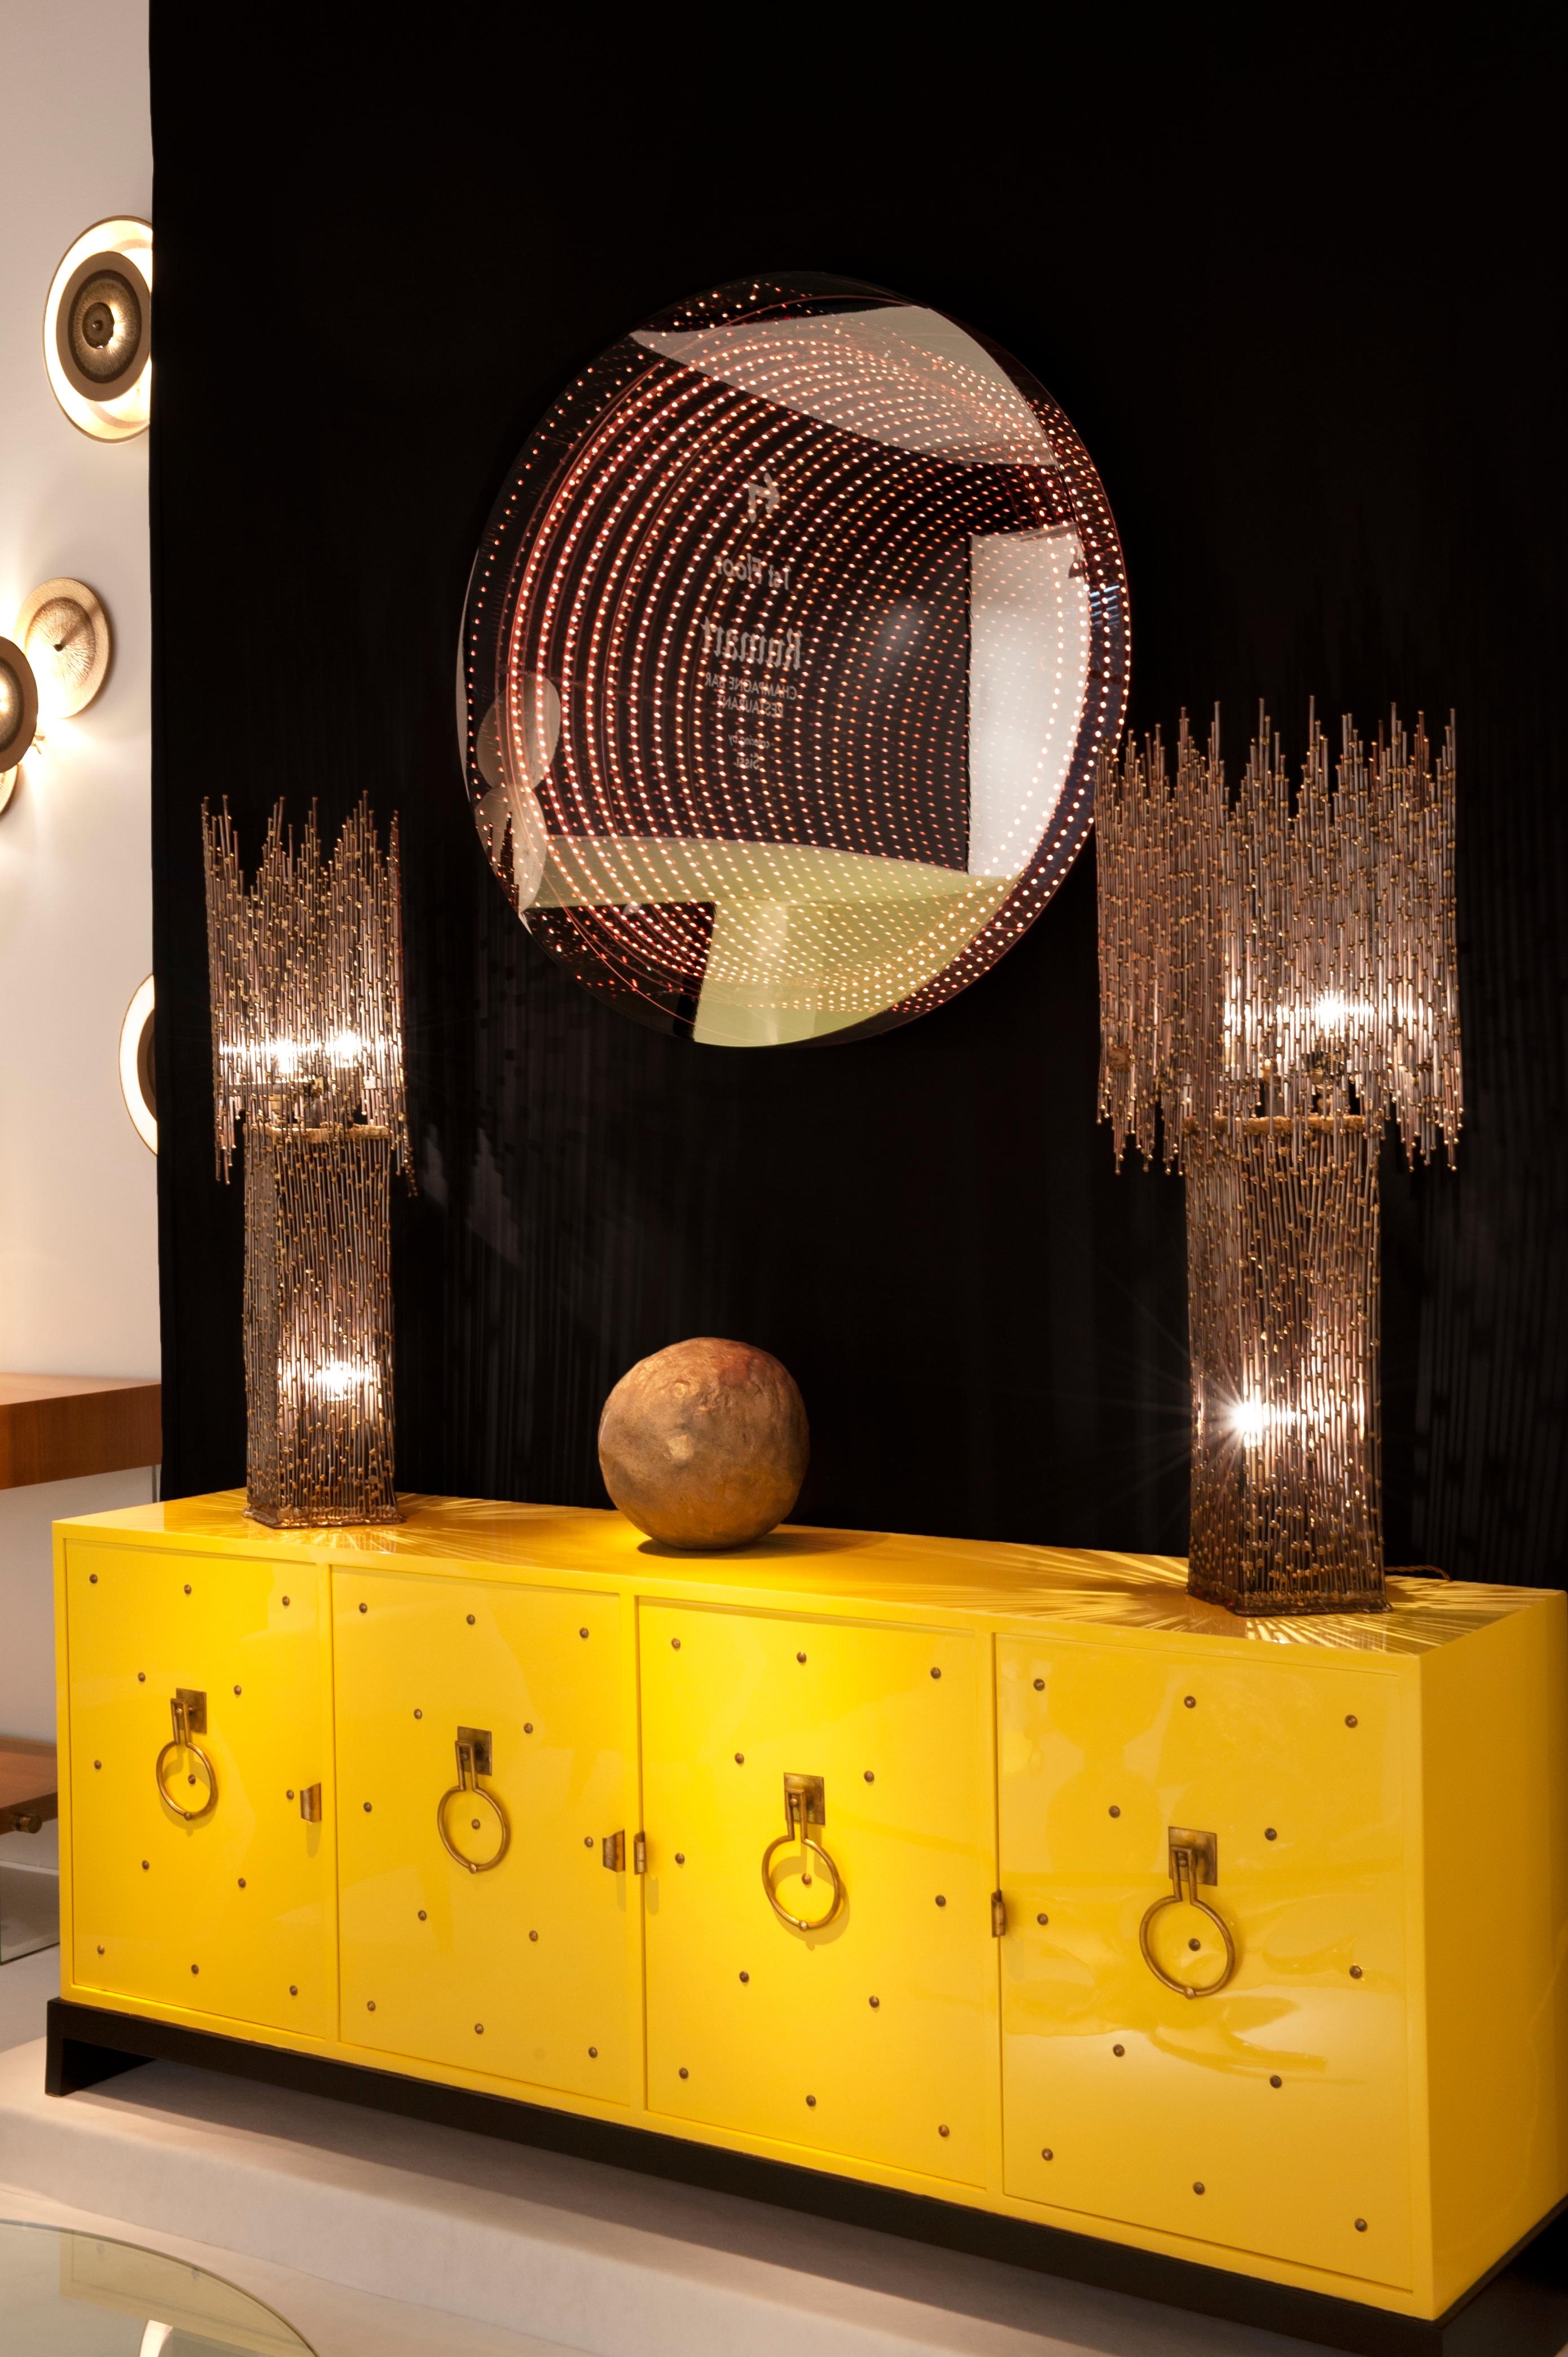 Raphael Fenice Unendlichkeitsspiegel aus Lucite und LED-Technologie
Wenn der Spiegel ausgeschaltet ist, sieht er aus wie ein echter Spiegel.
Der Spiegel kann mit einer Fernbedienung ein- und ausgeschaltet werden und die Farbe wechseln
Verkabelt